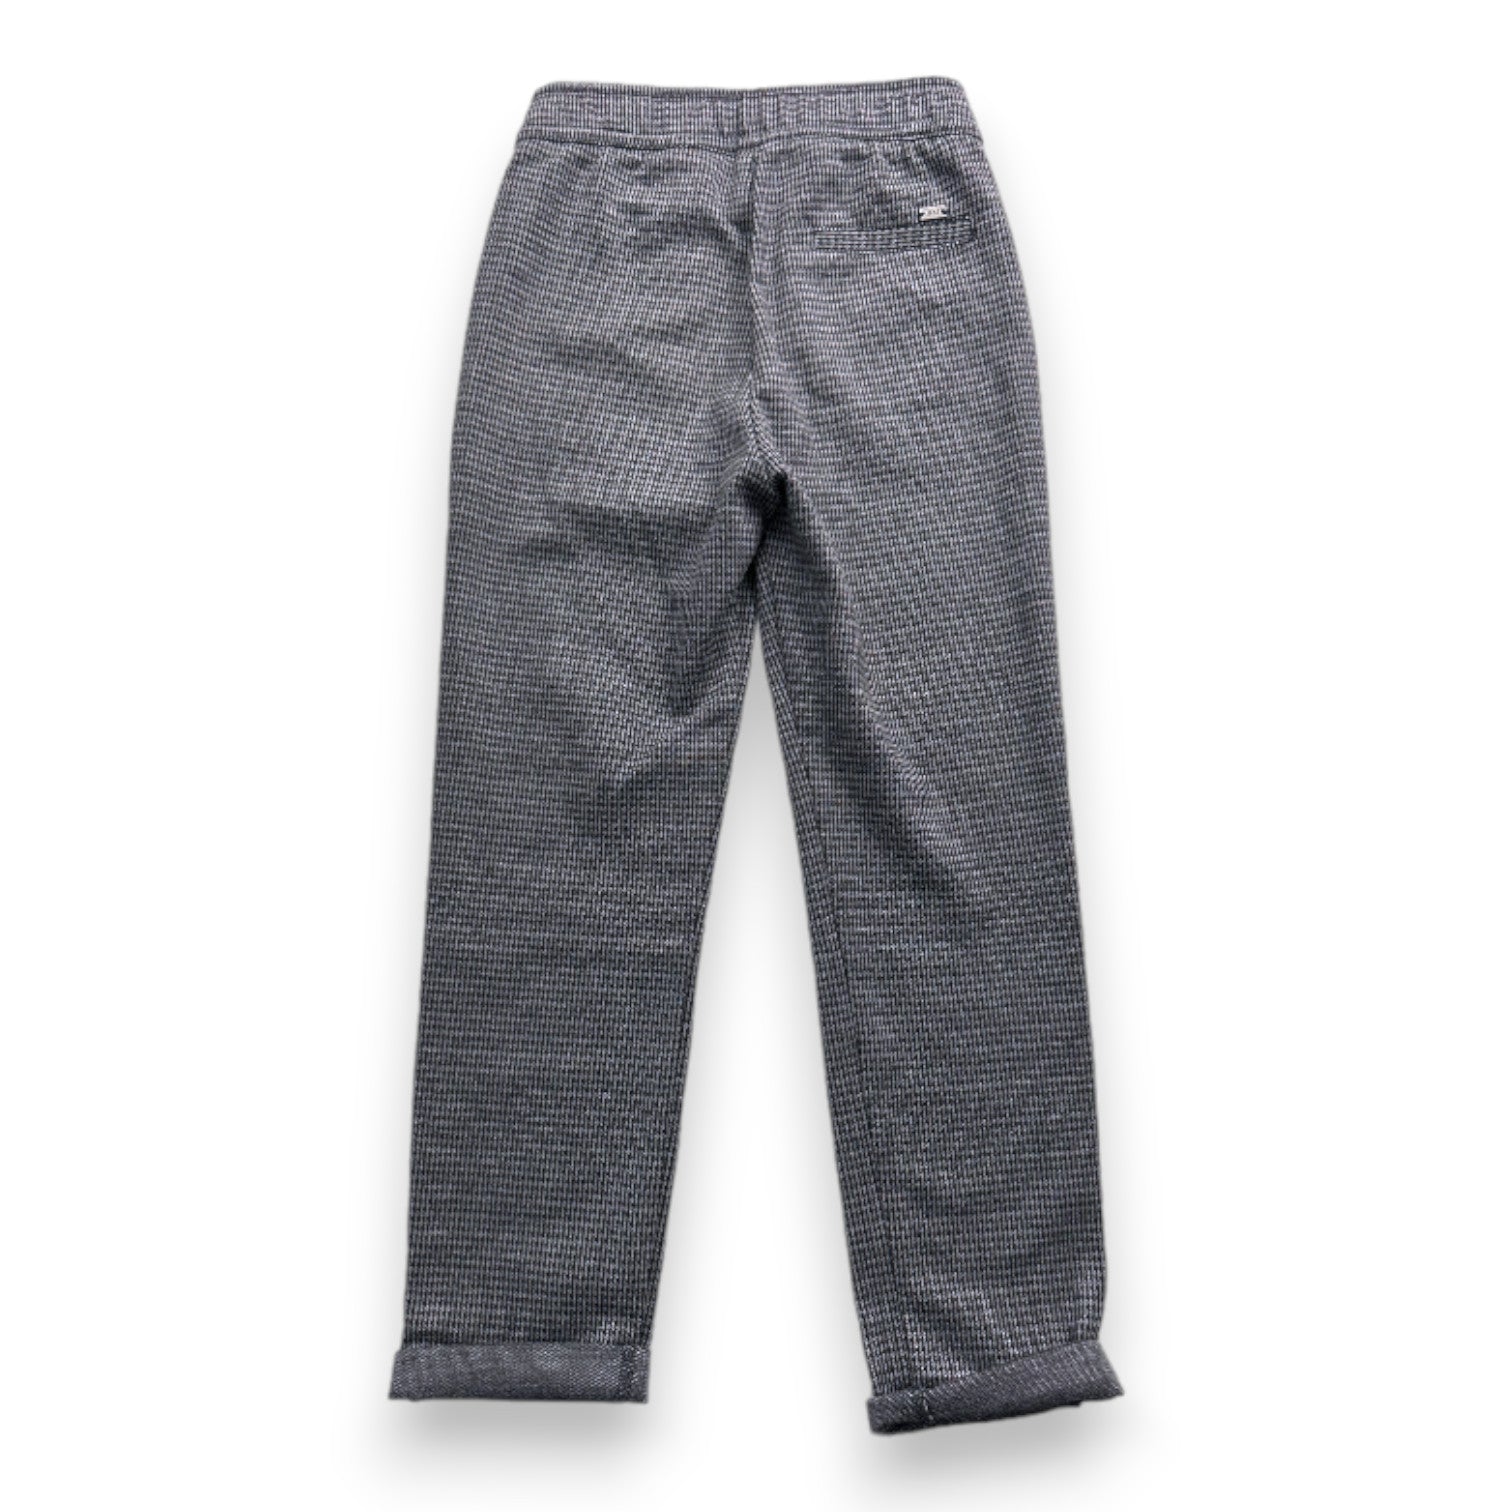 IKKS - Pantalon gris et noir - 8 ans